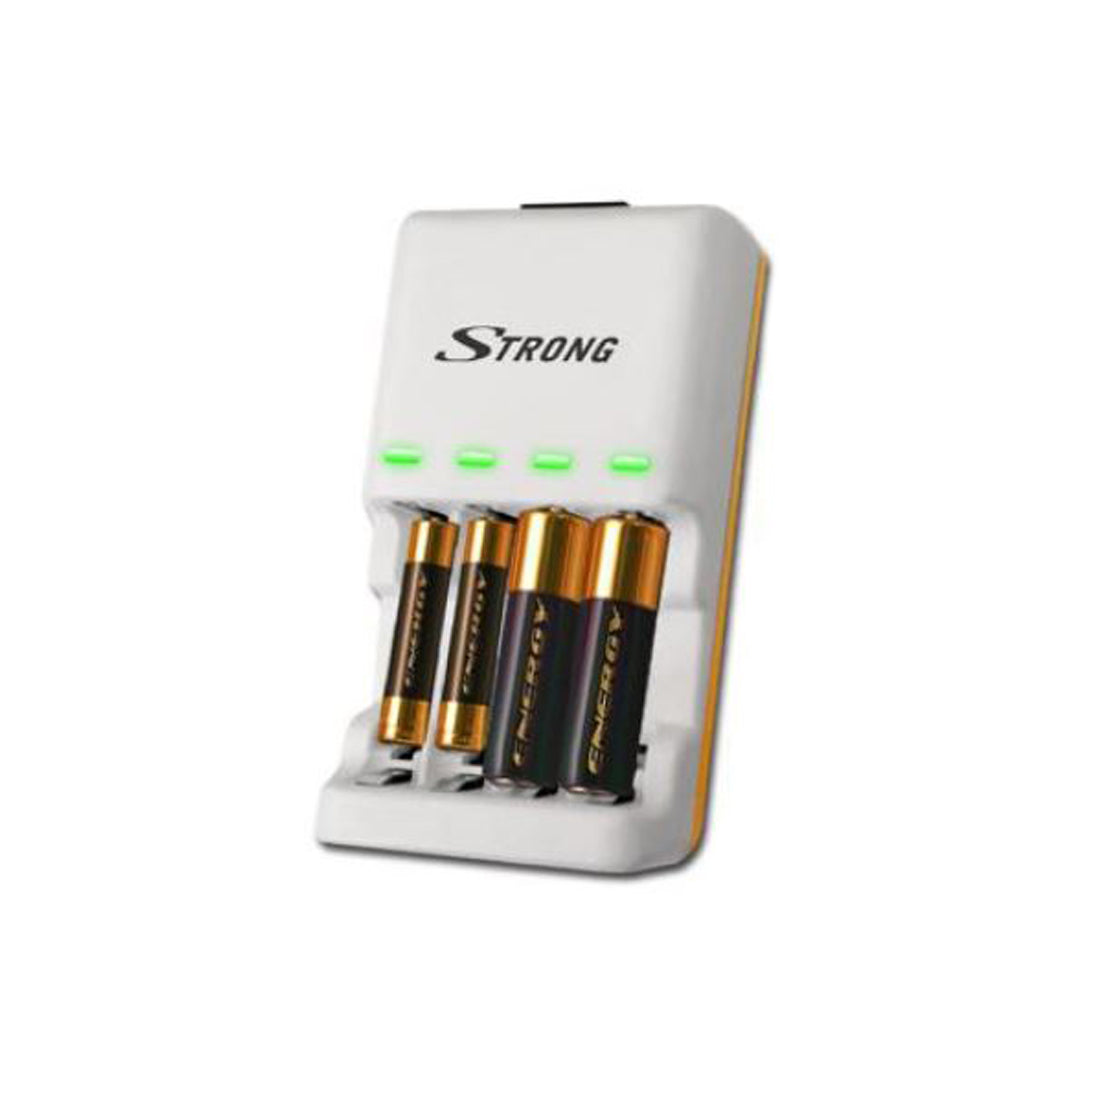 Strong Caricatore per batterie e accumulatori, caricabatterie per pile e accumulatori, batterie alkaline usa e getta AA - AAA